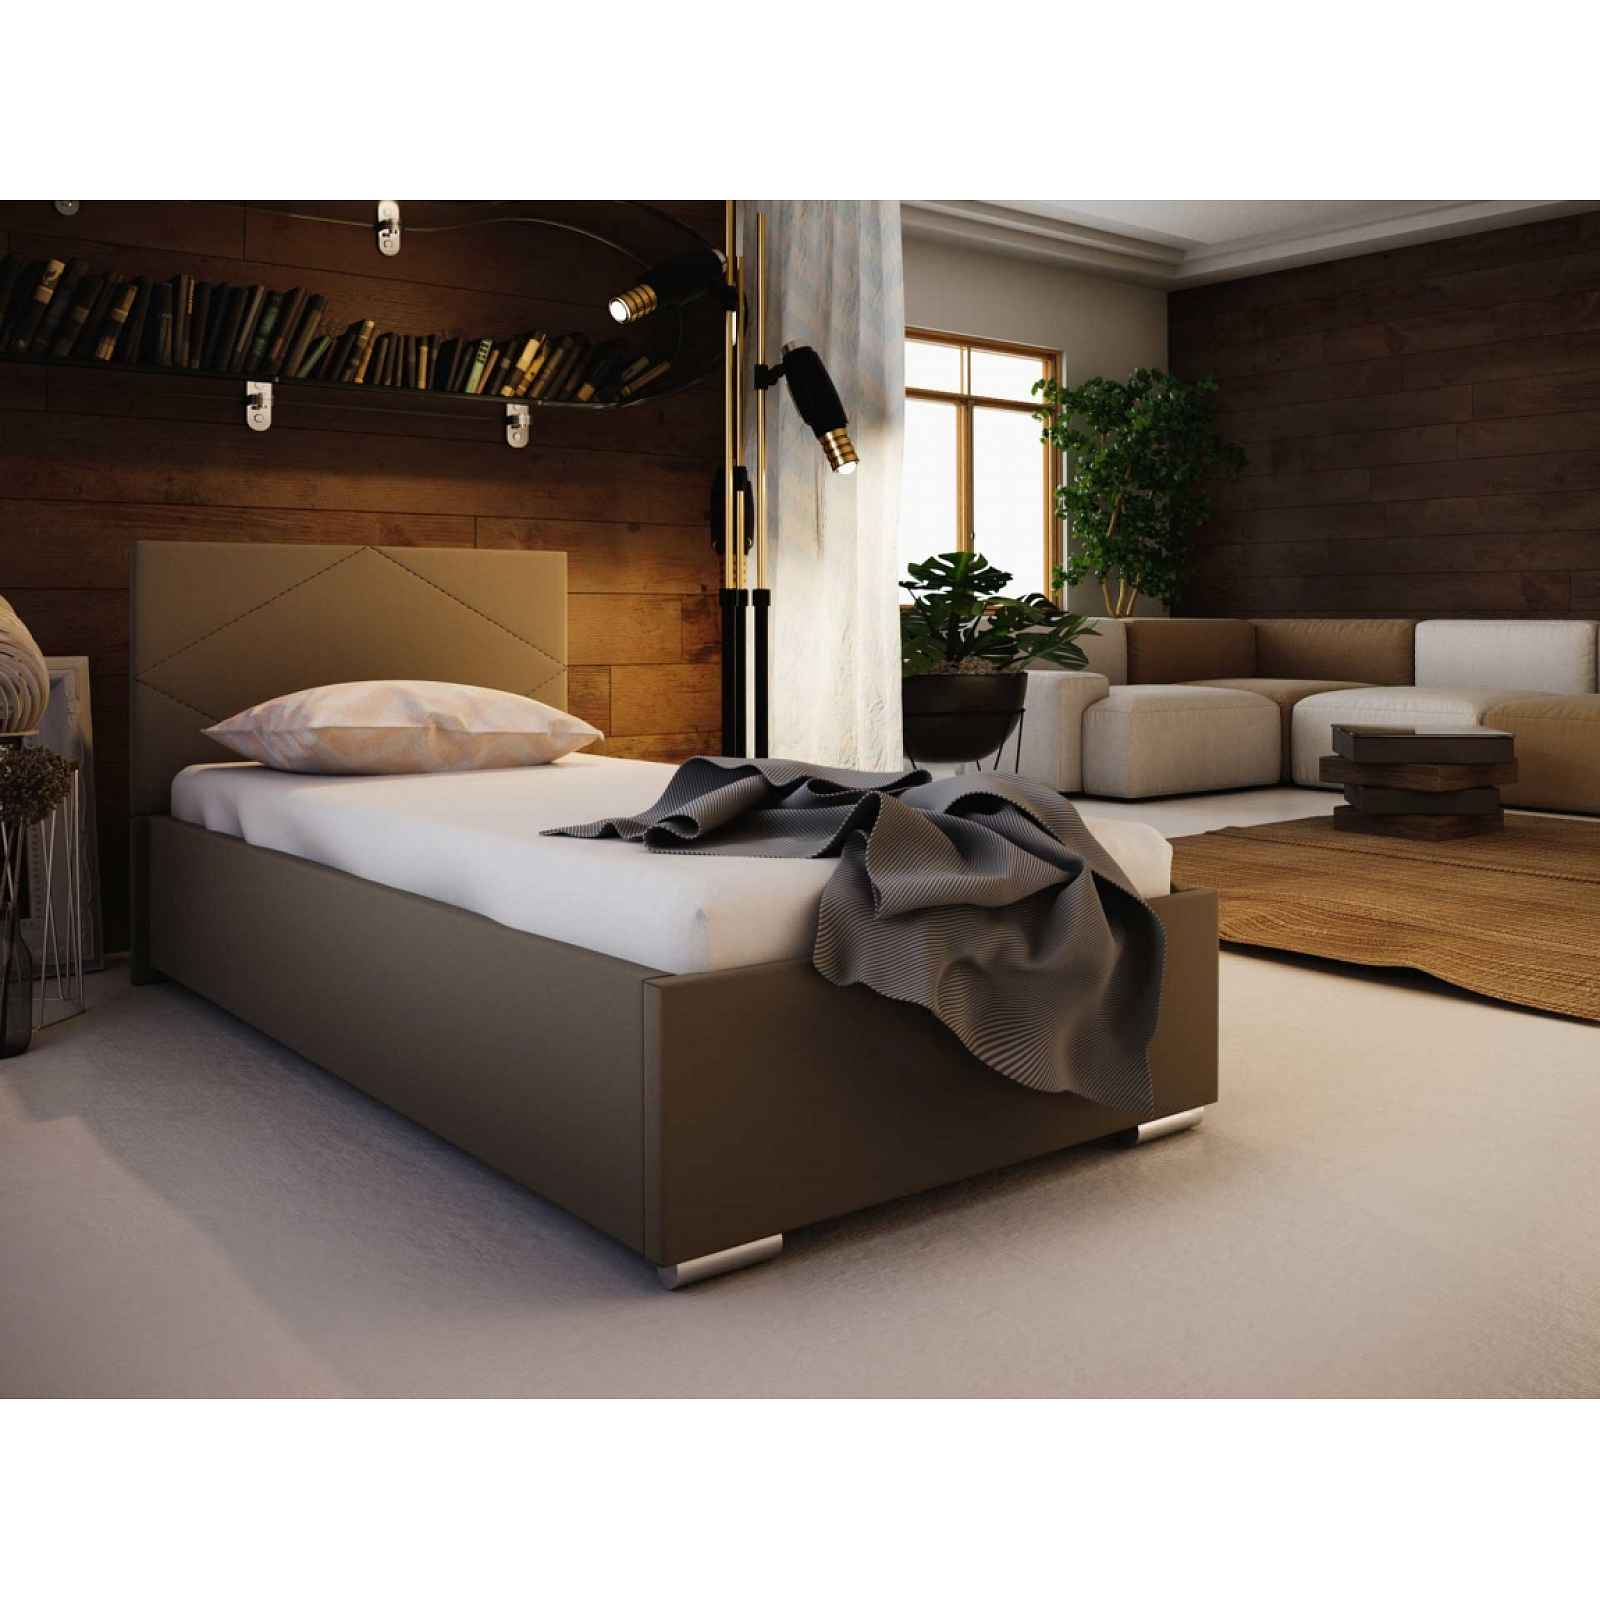 Čalouněná postel SOFIE 90x200 cm, hnědá látka